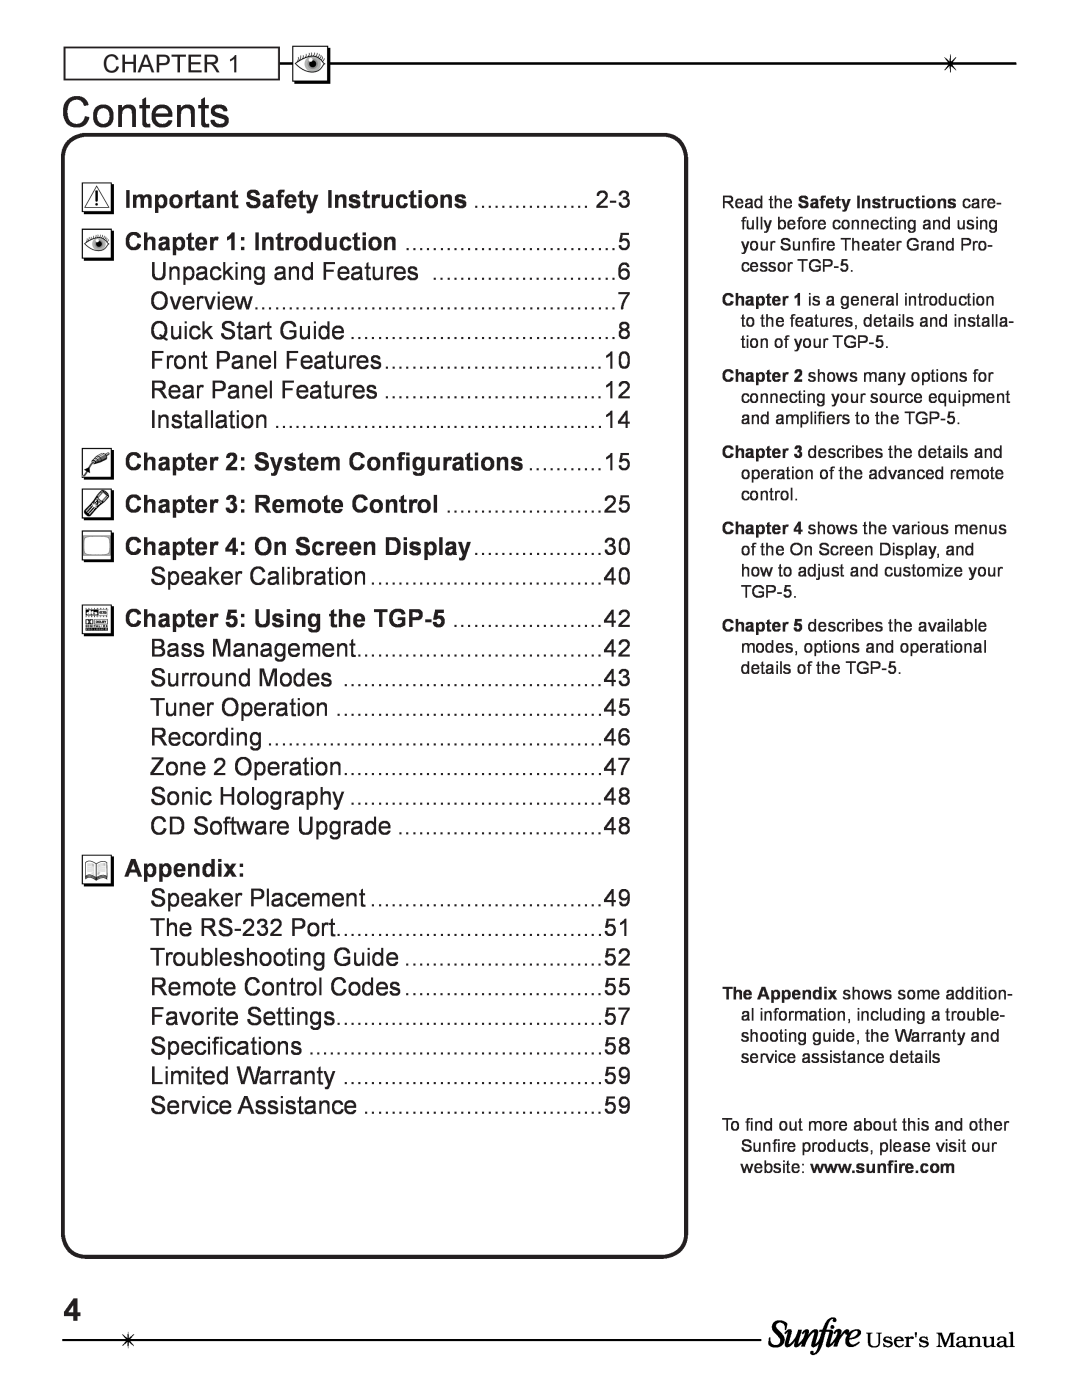 Sunfire TGP-5(E) manual Contents, Appendix 